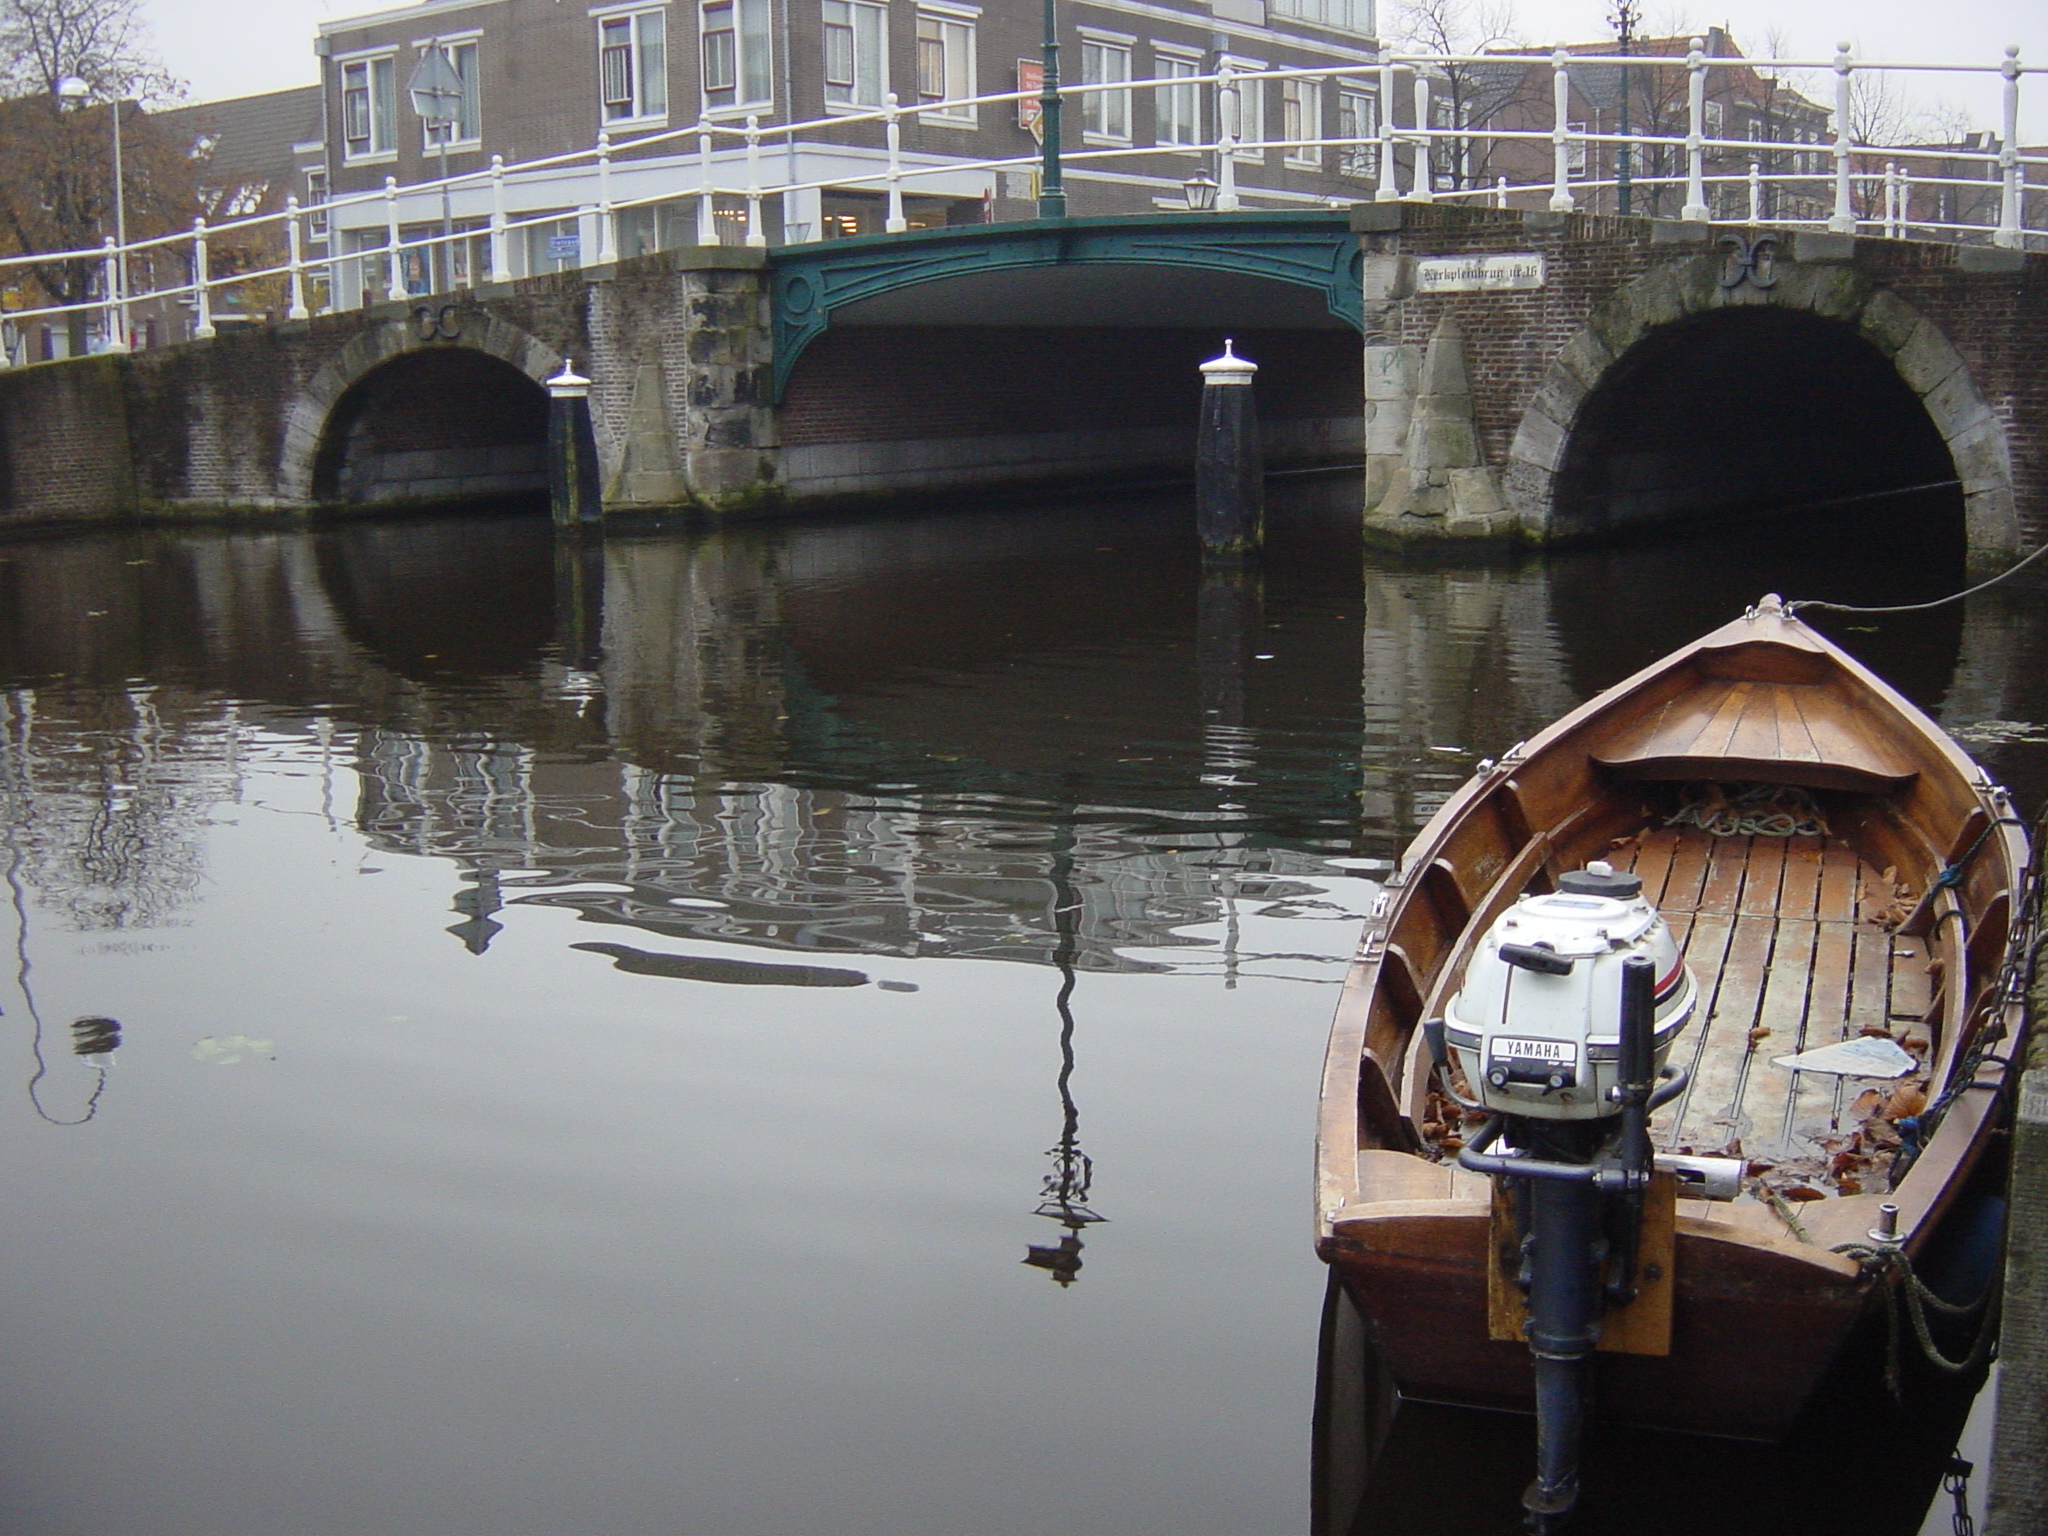 Another bridge in Leiden